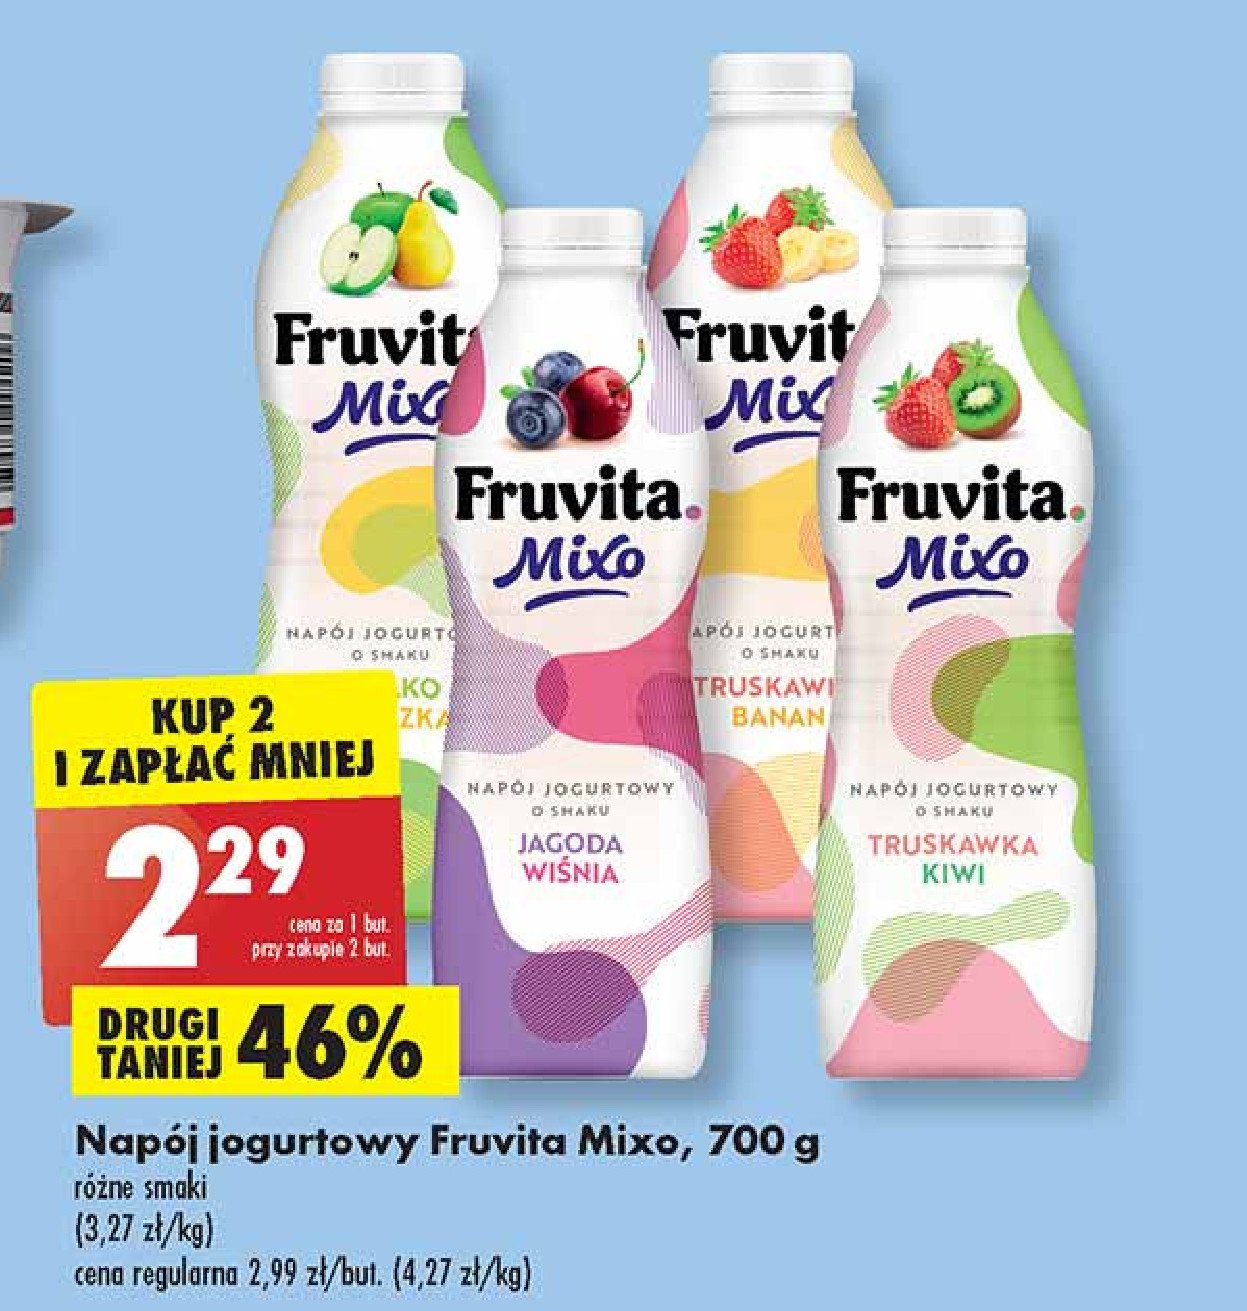 Napój jogurtowy jagoda wiśnia Fruvita mixo promocje